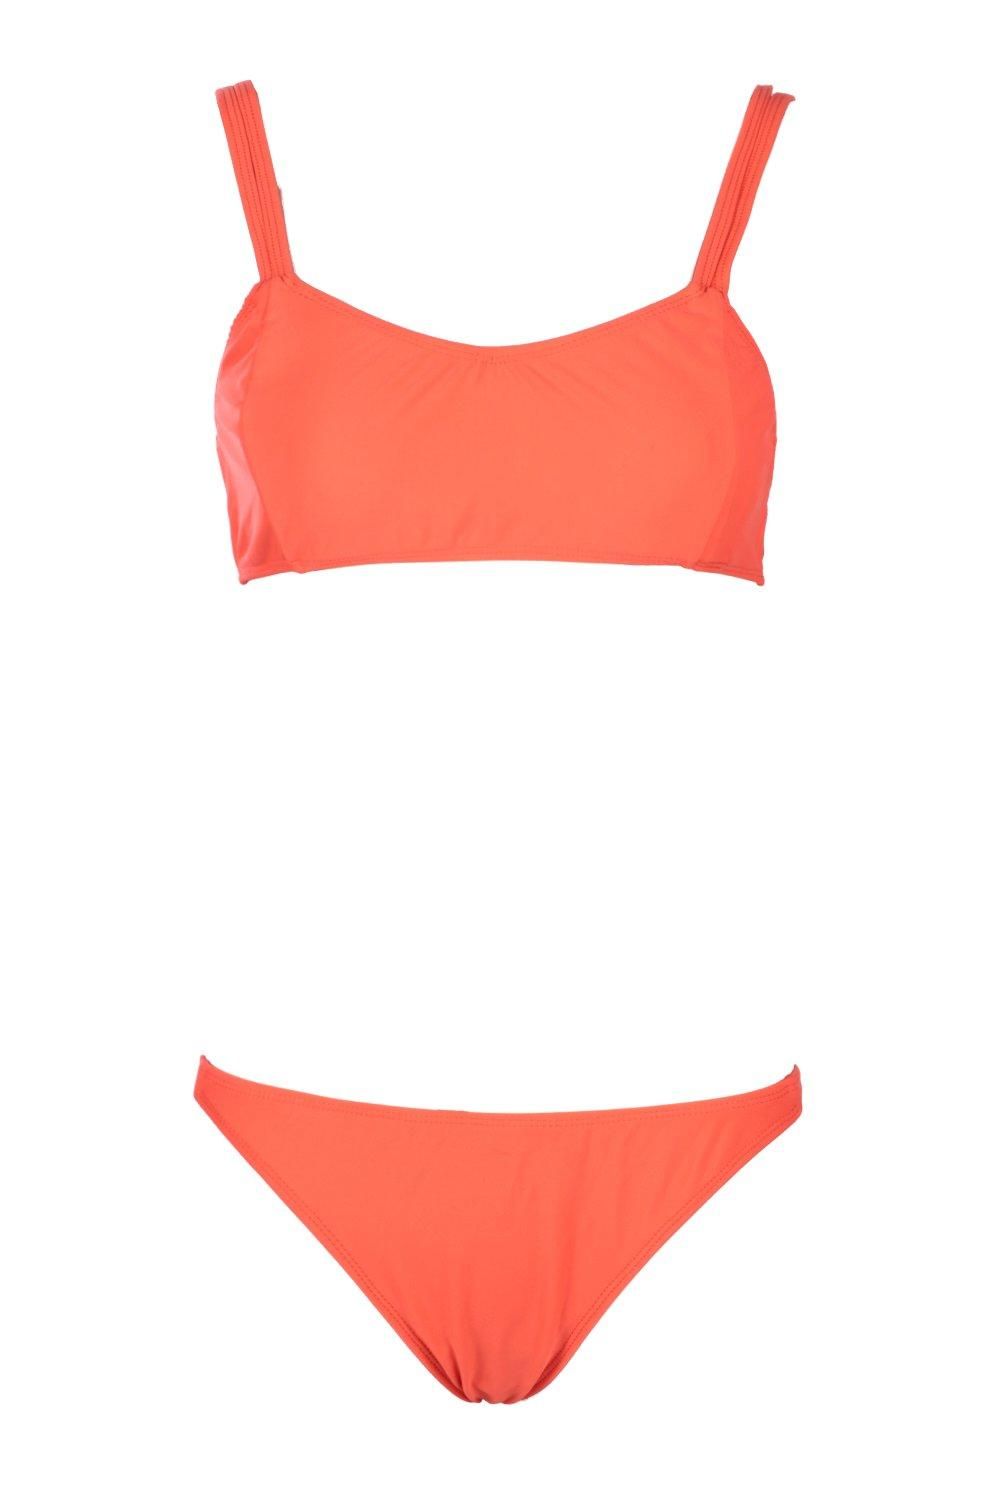 Paphos Skinny Strap Bikini | Boohoo.com (US & CA)